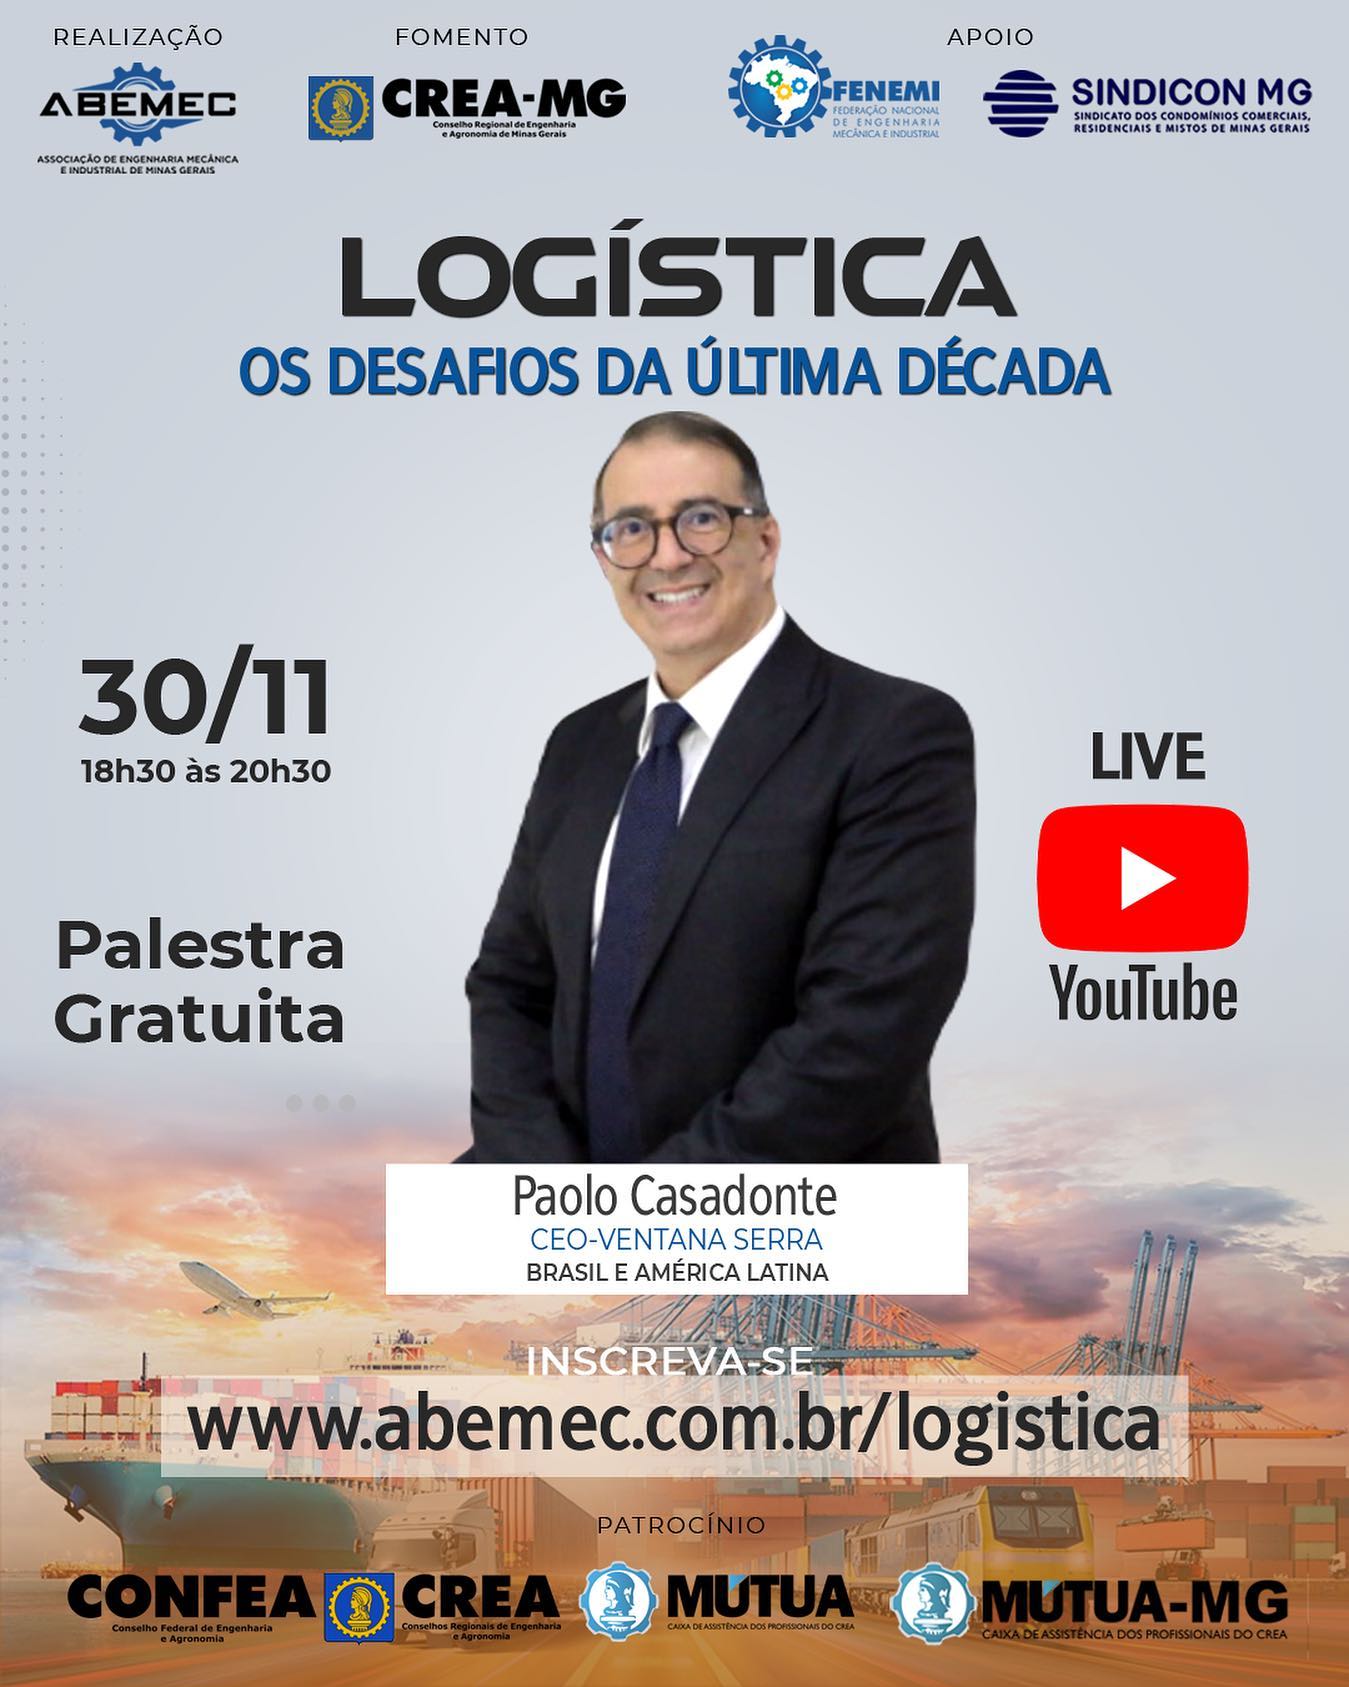 É HOJE! Live gratuita sobre logística! Inscreva-se! www.abemec.com.br/logistica #abemecmg